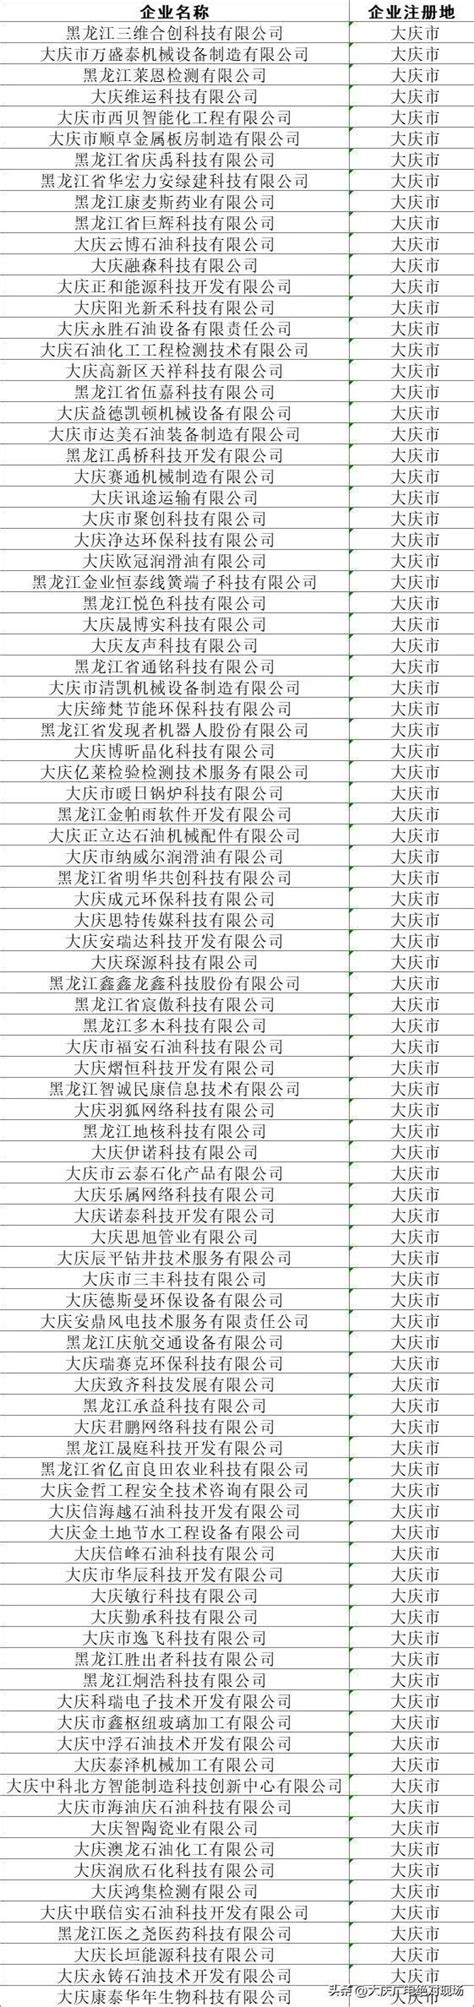 关于黑龙江省第四批专精特新“小巨人”企业和第一批专精特新“小巨人”复核通过企业名单的公示-大庆辰平钻井技术服务有限公司